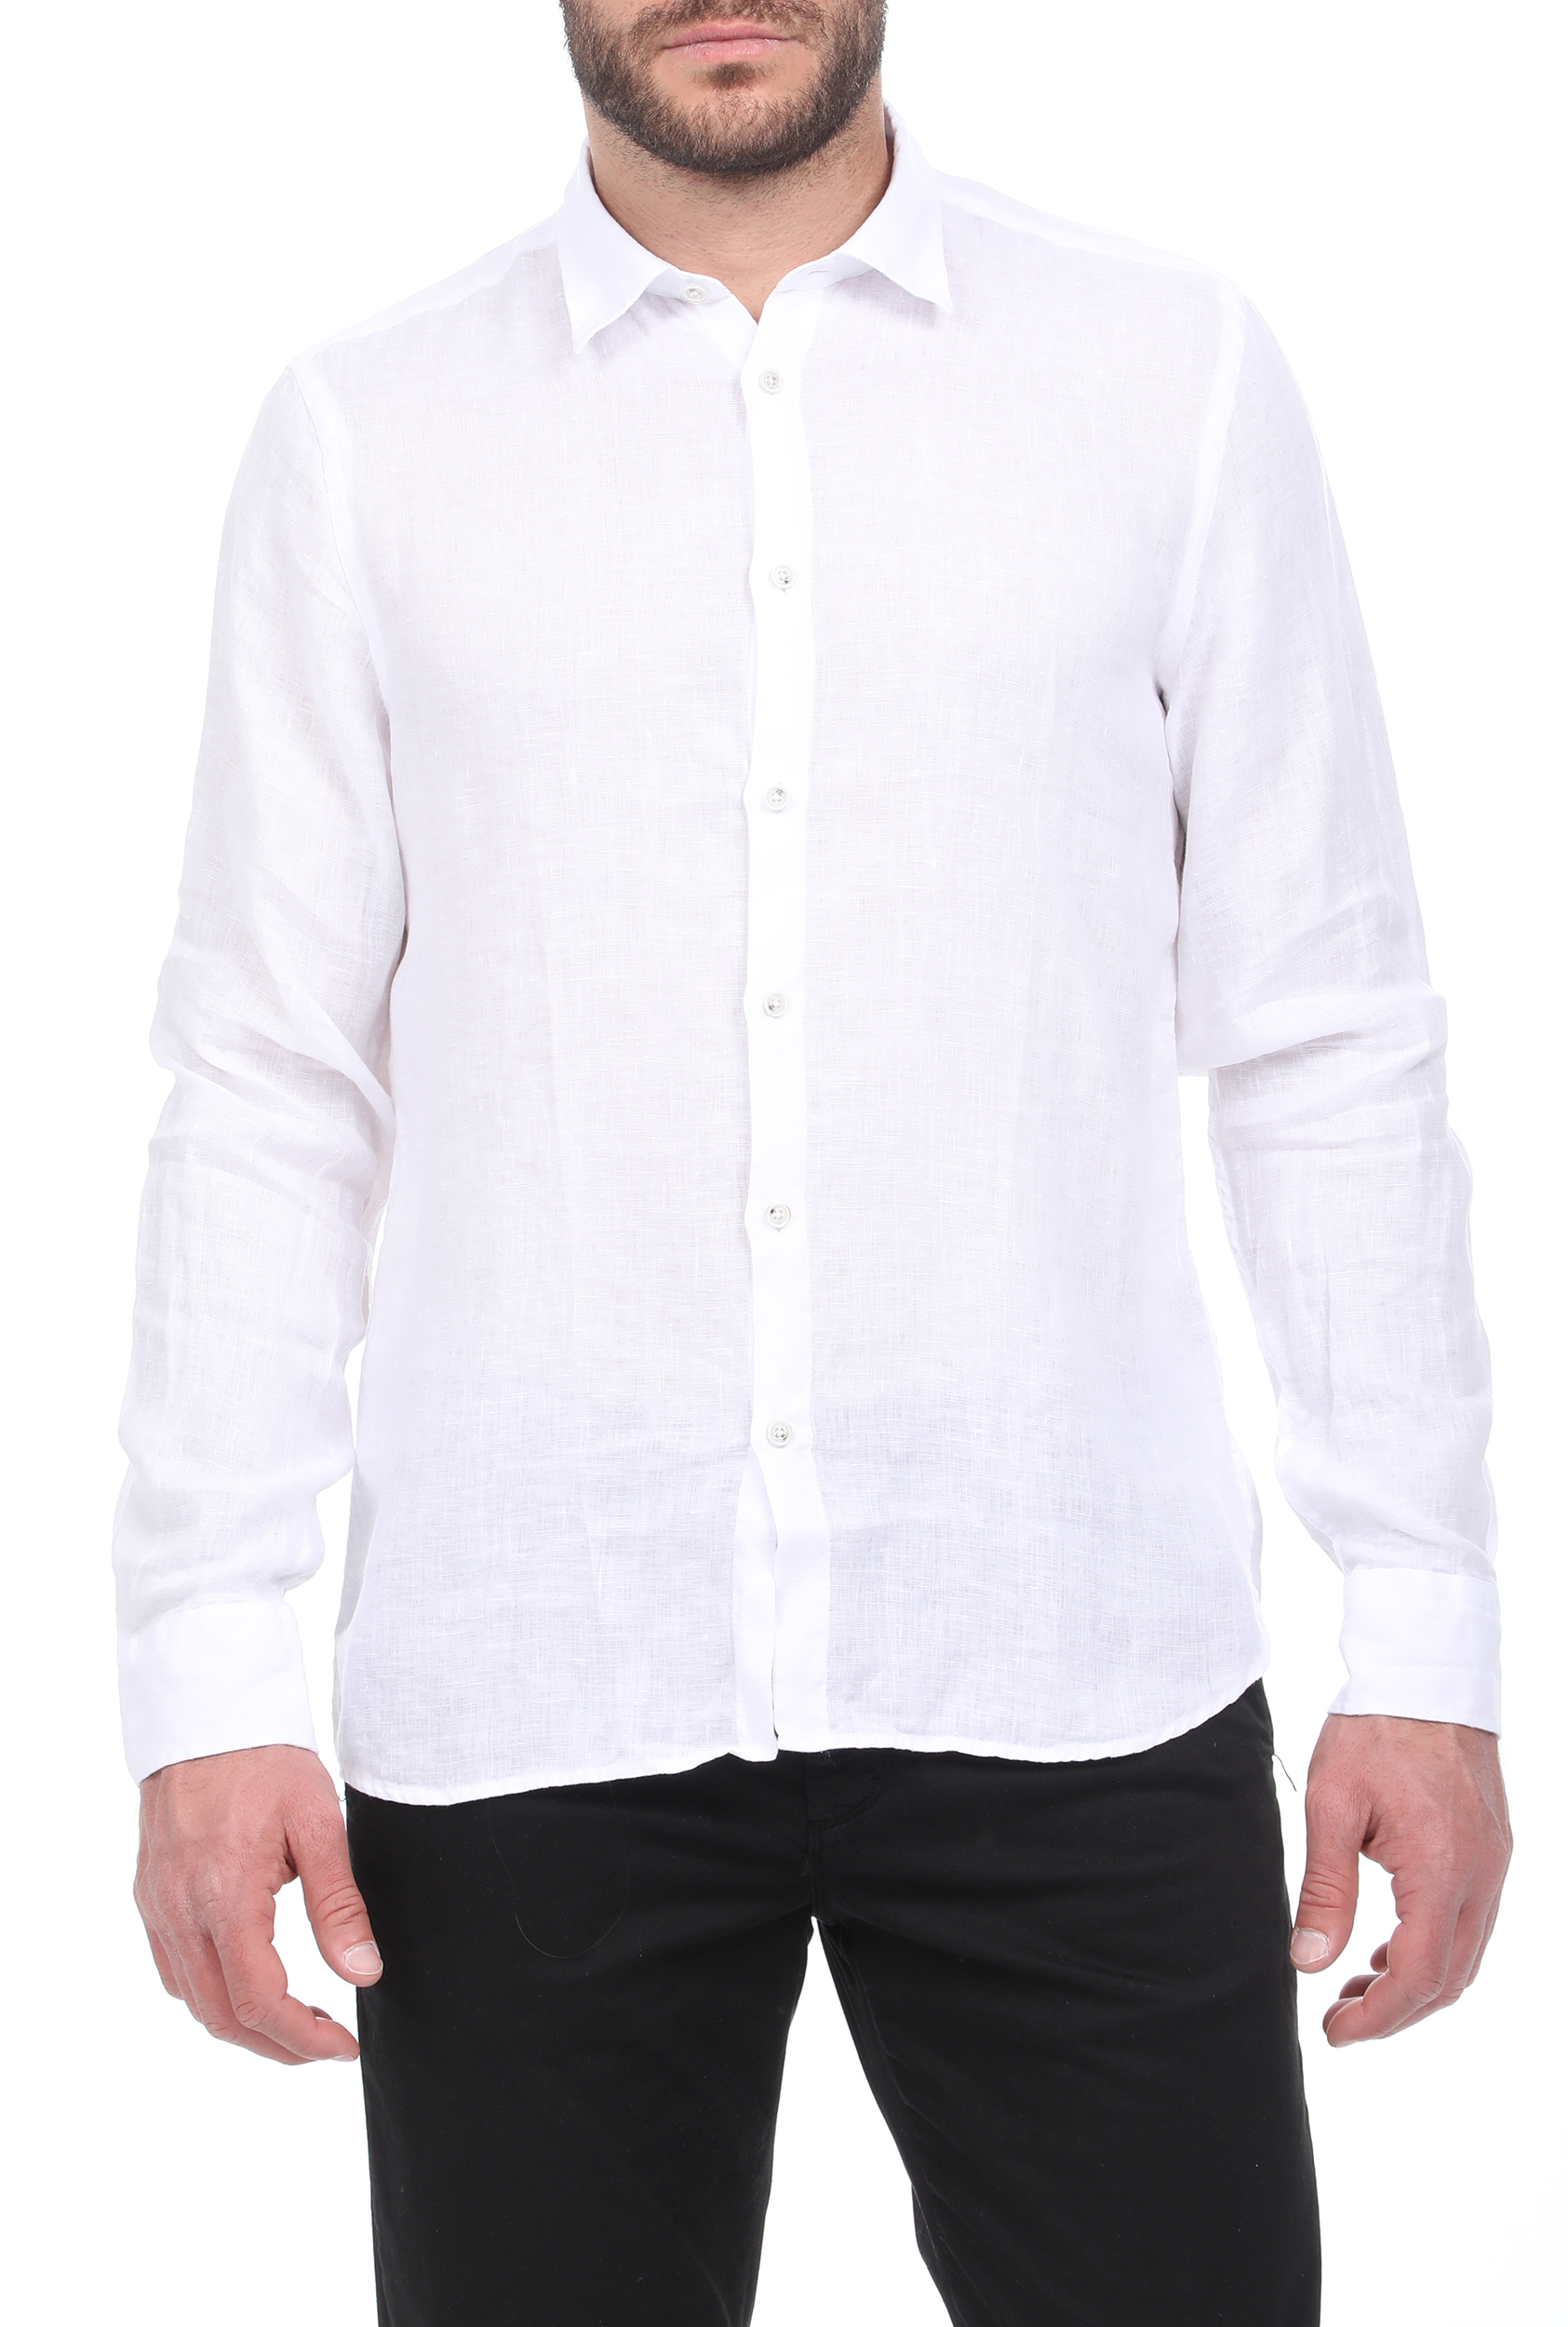 Ανδρικά/Ρούχα/Πουκάμισα/Μακρυμάνικα SSEINSE - Ανδρικό λινό πουκάμισο SSEINSE λευκό